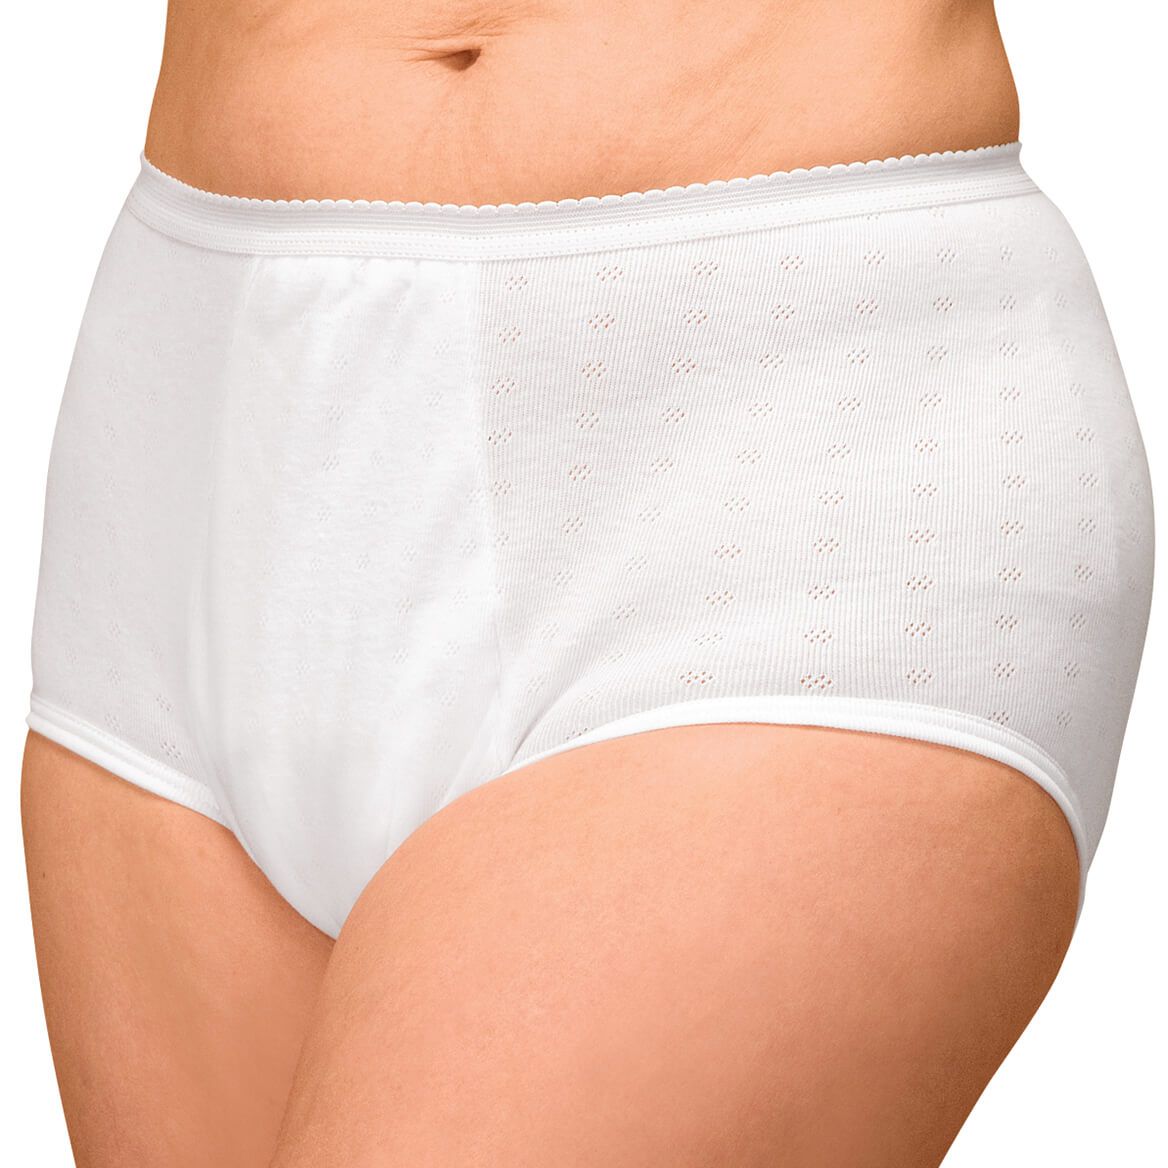 Women's Incontinence Underwear.